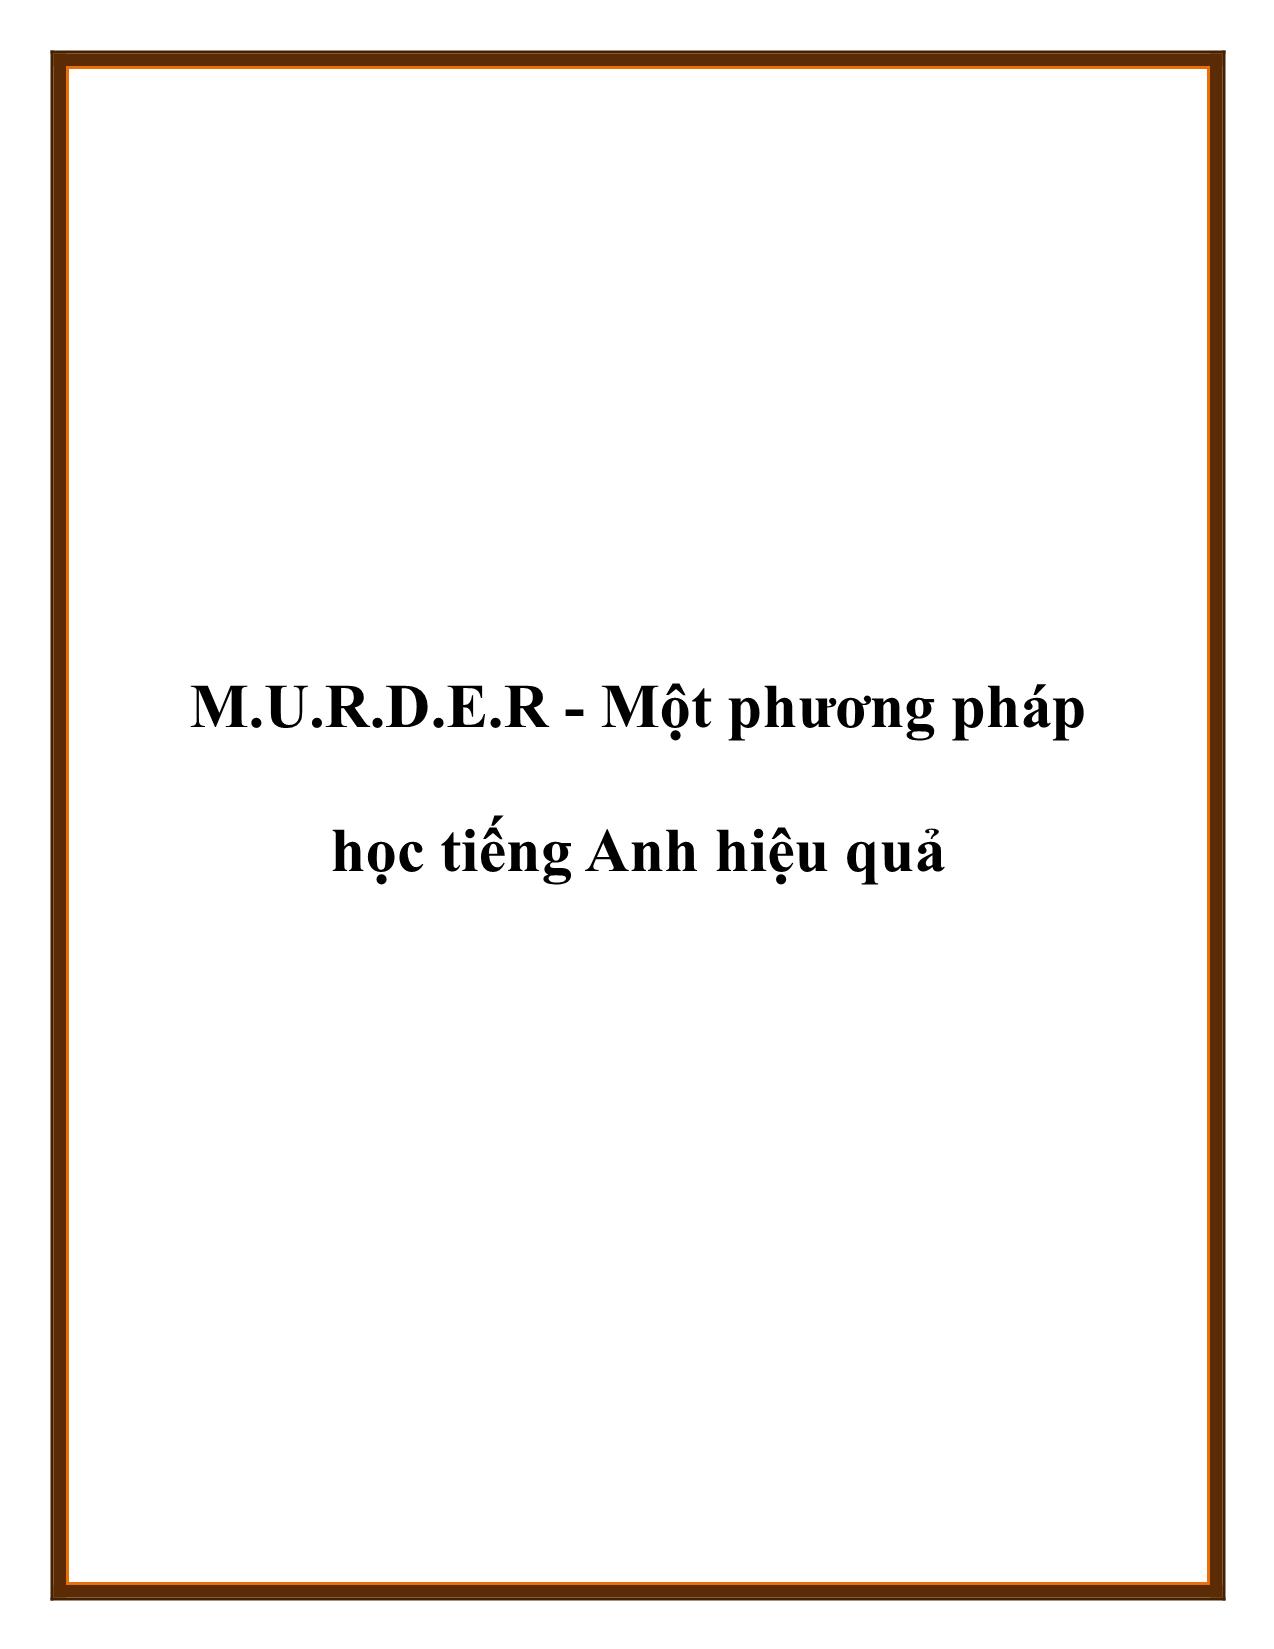 M.U.R.D.E.R - Một phương pháp học tiếng Anh hiệu quả trang 1